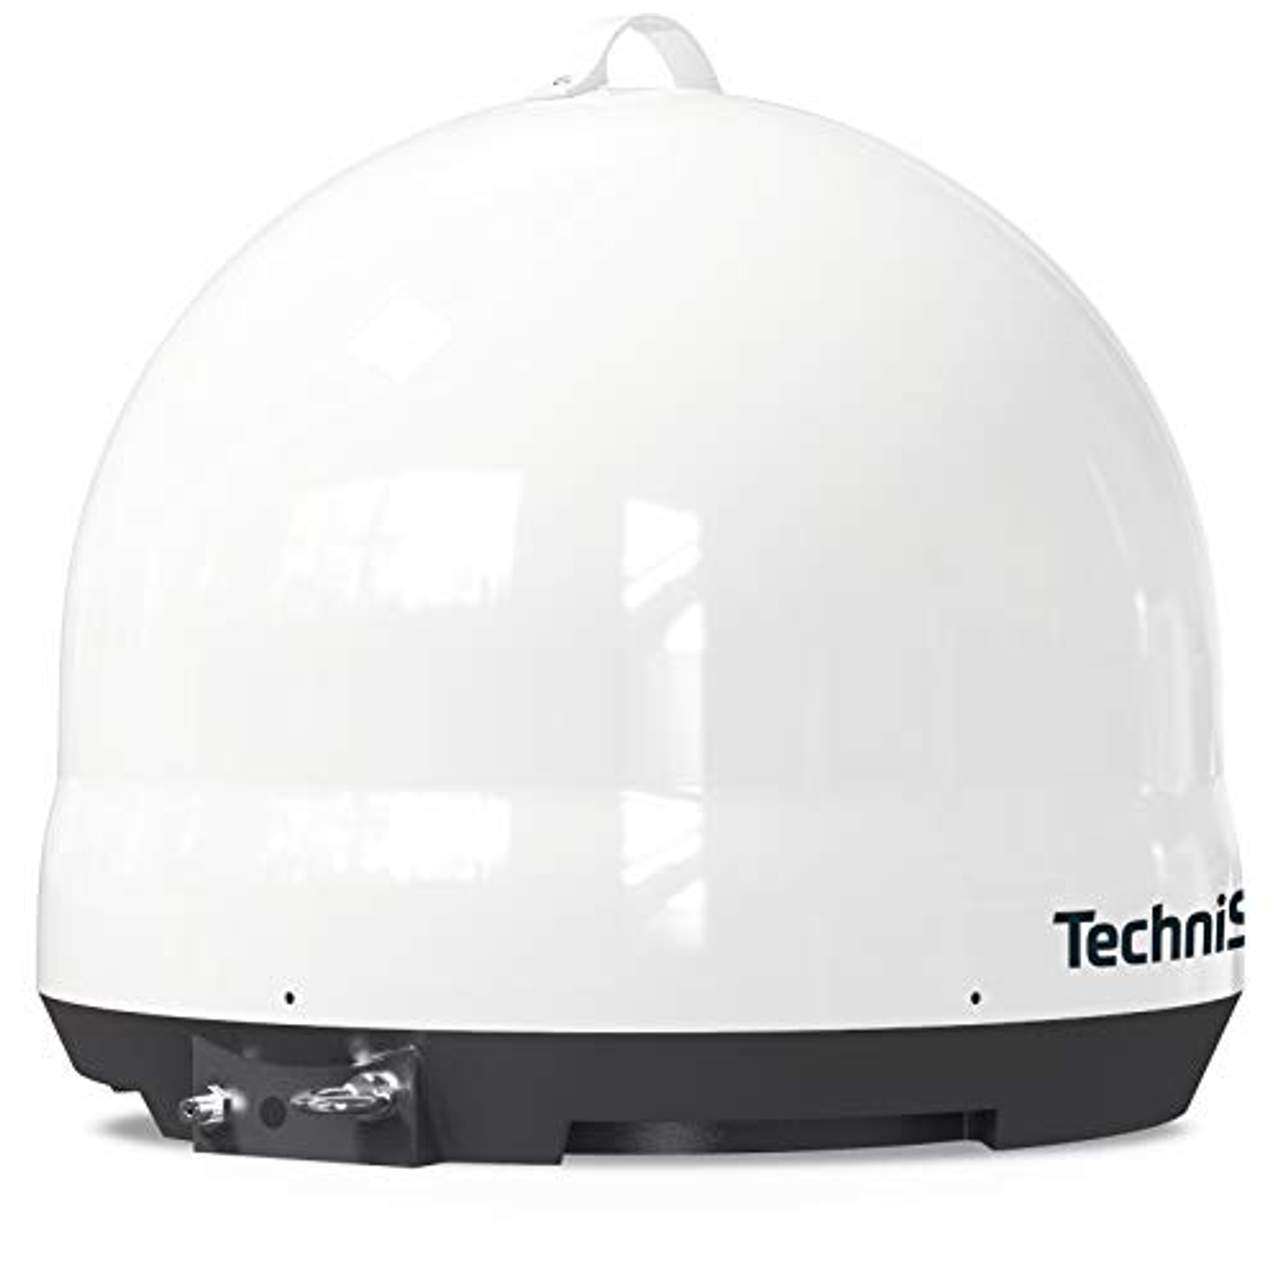 TechniSat Skyrider Dome Vollautomatische Sat-Anlage (Single)